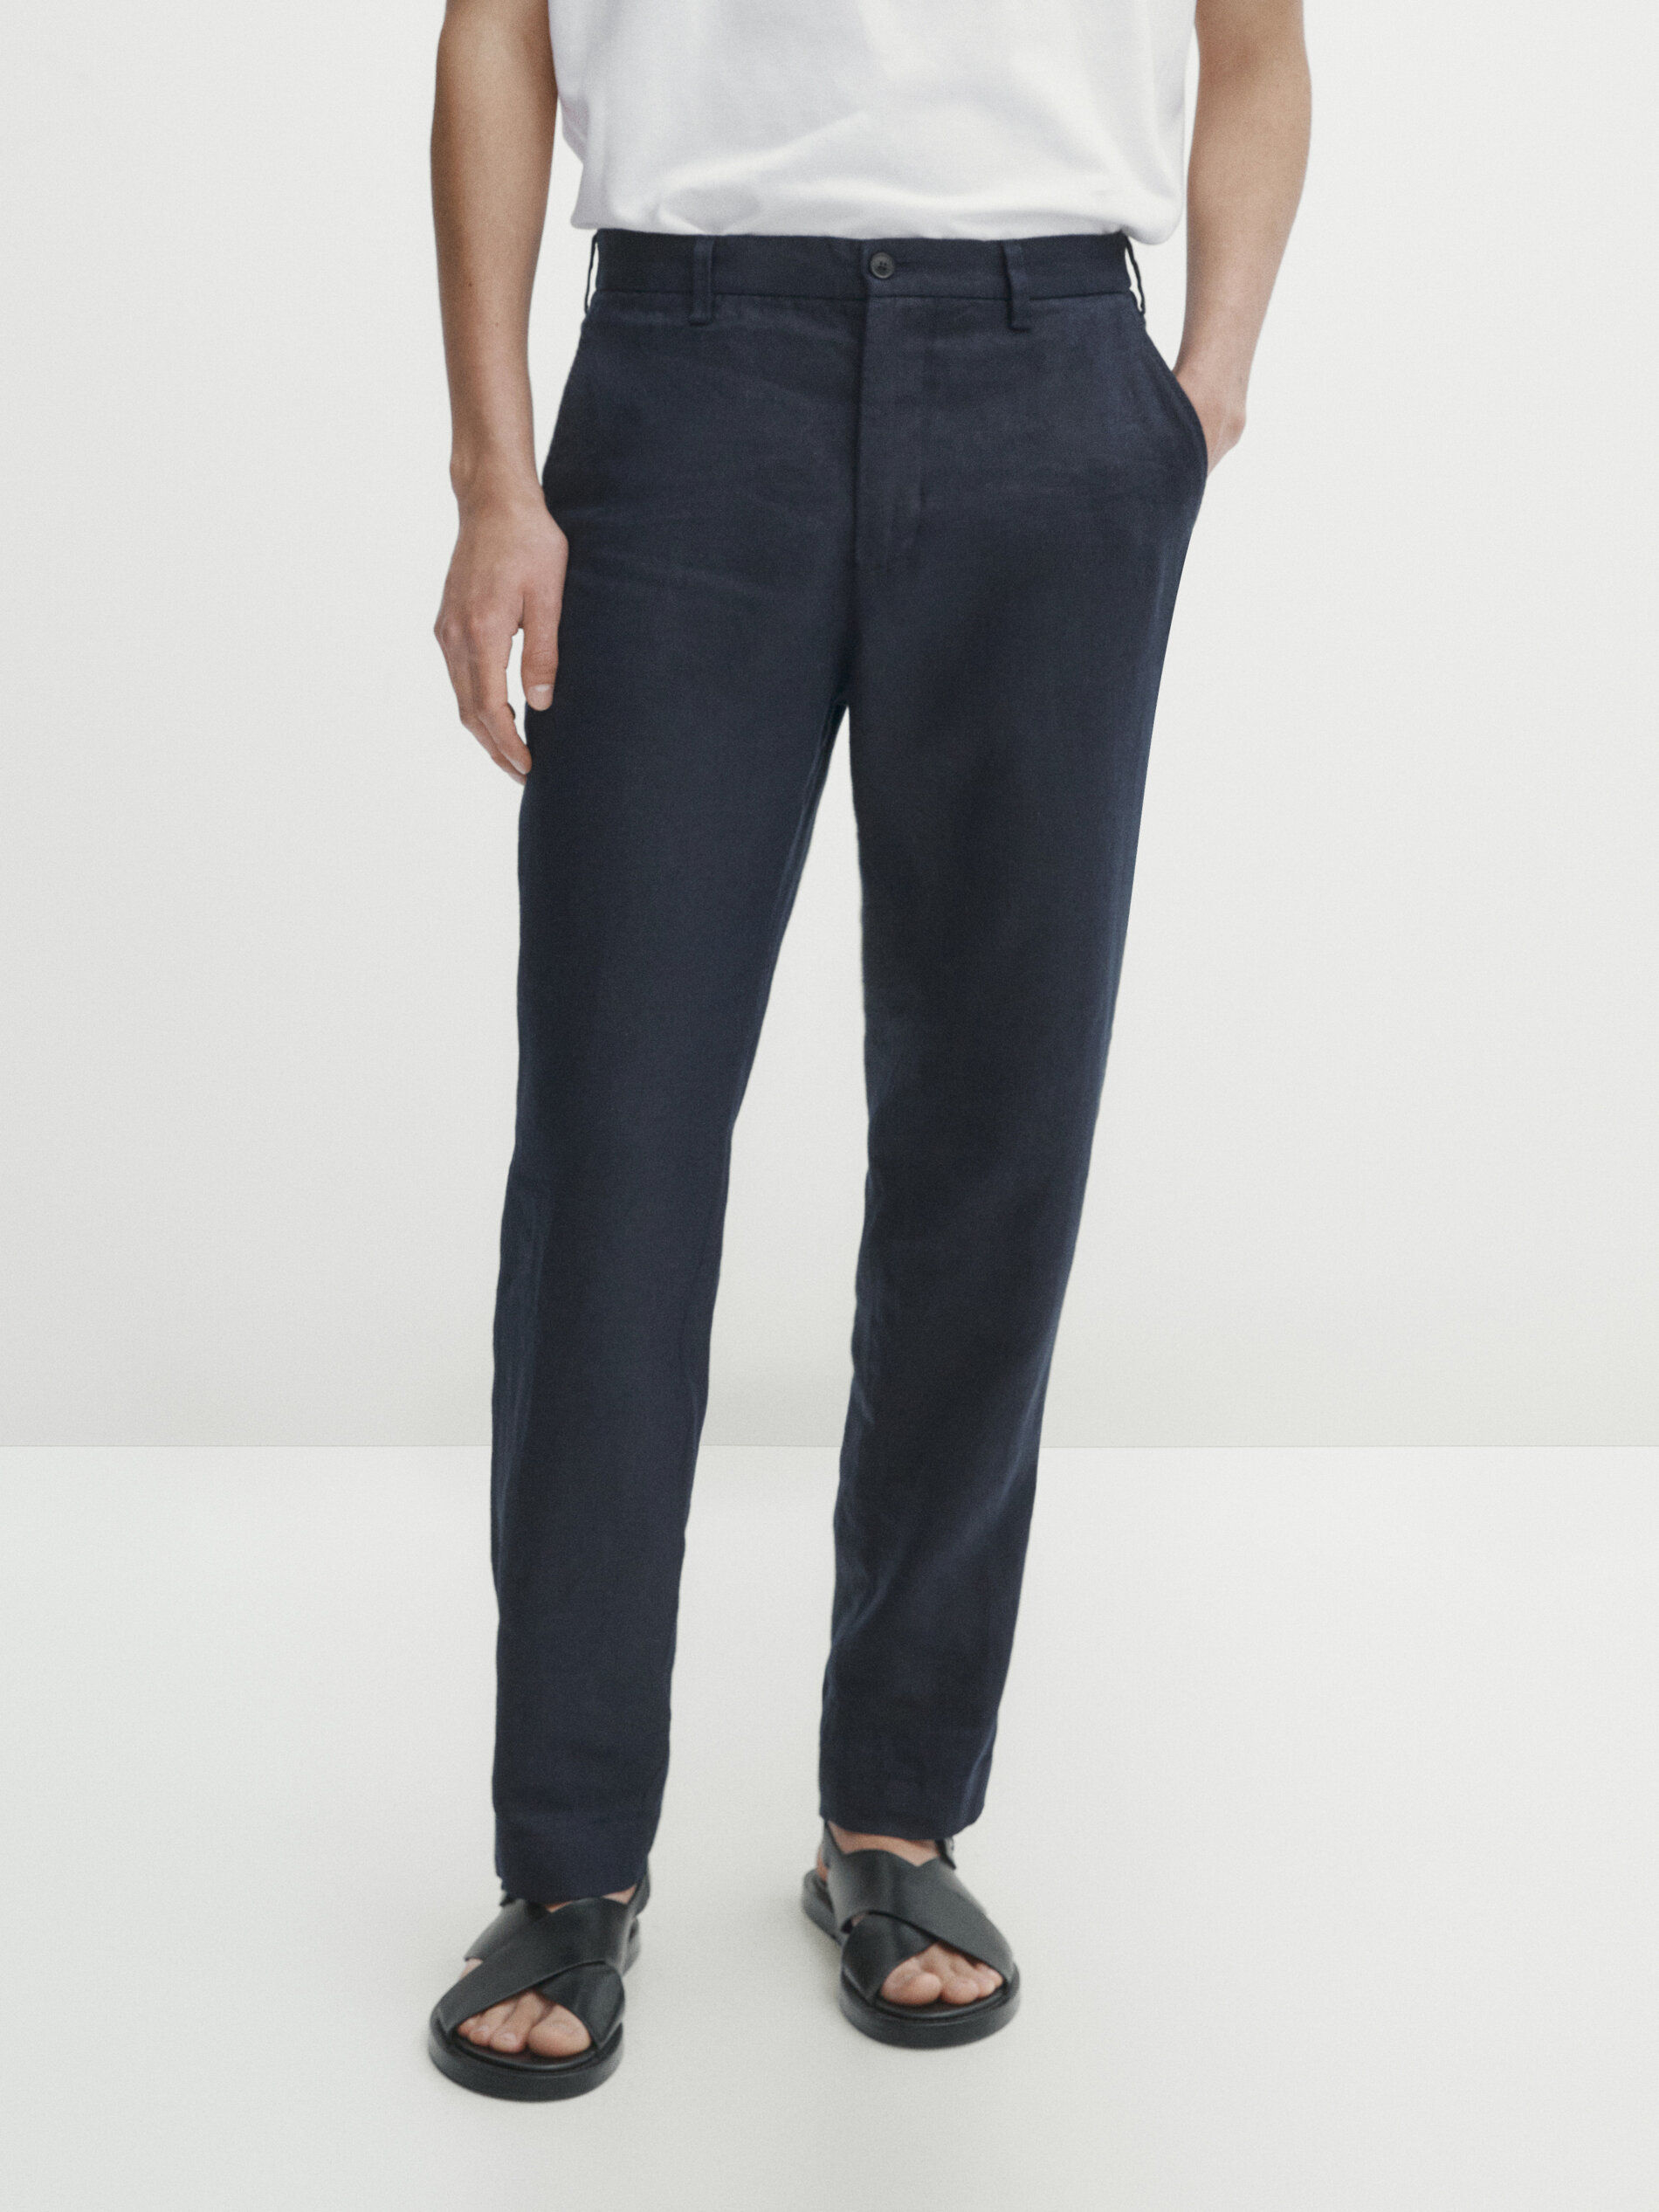 Trousers | Cashmere Design at Iris von Arnim